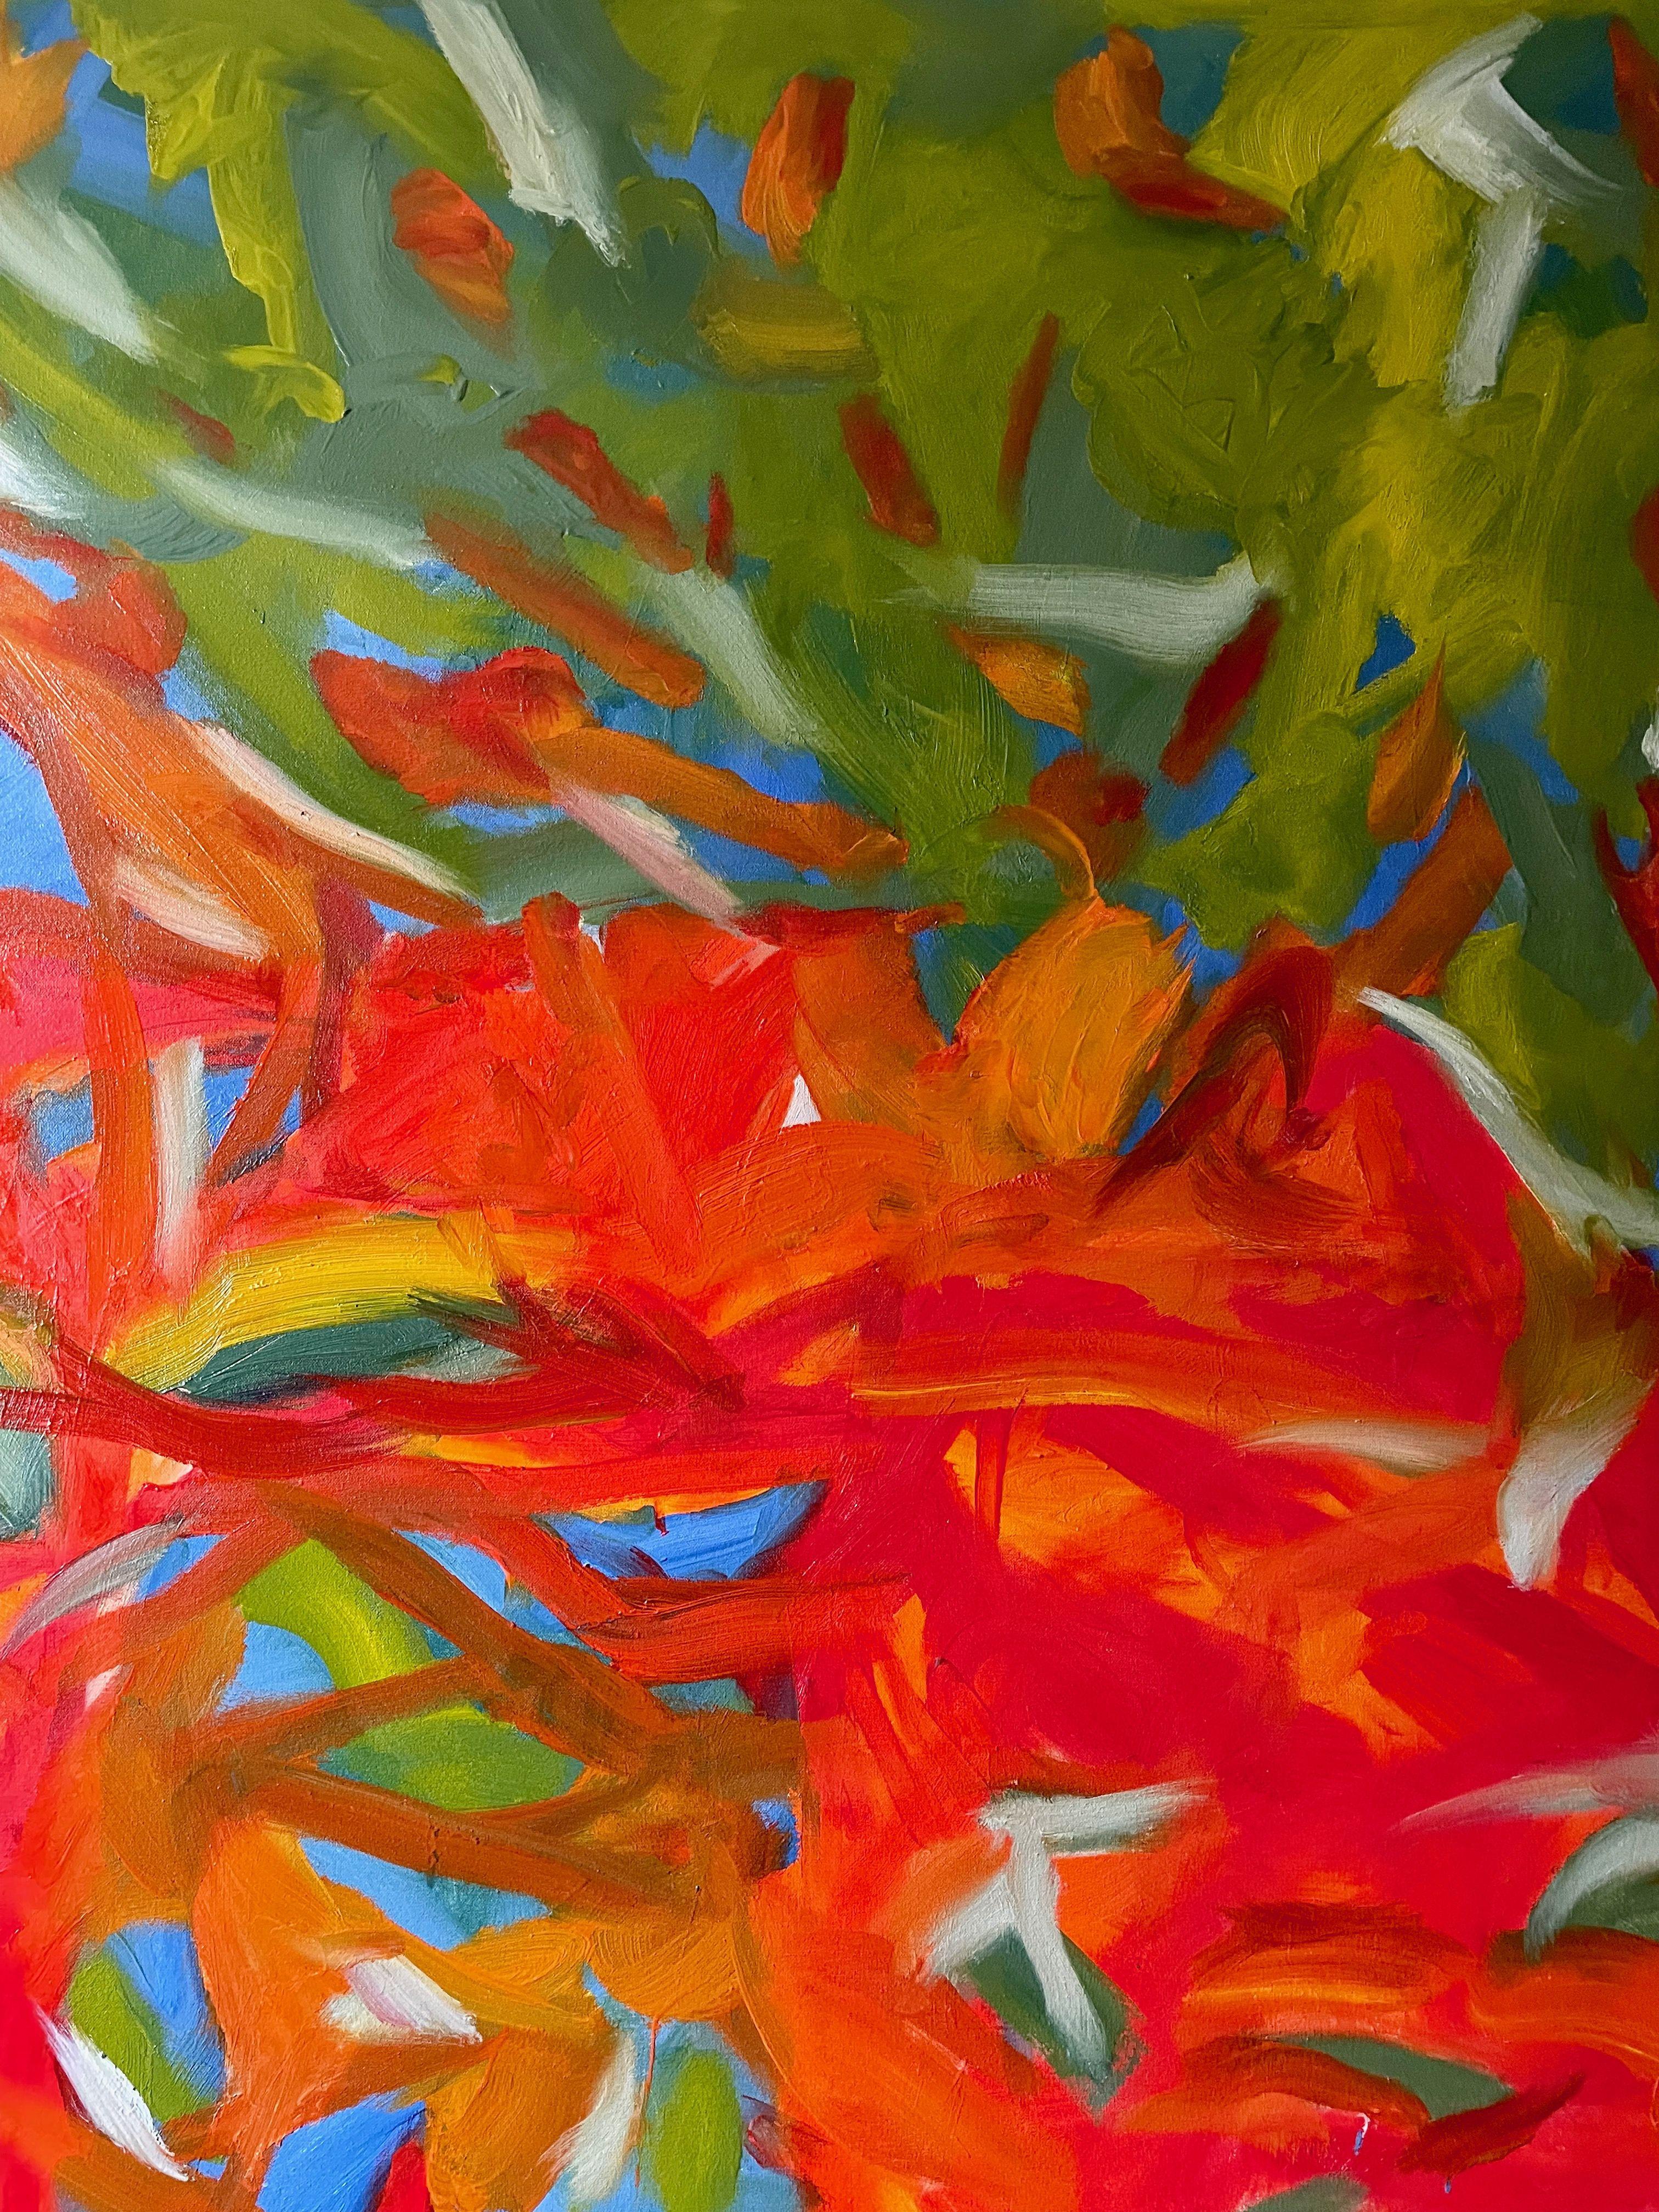 Je suis bloqué sur la pensée de U, peinture, huile sur toile - Painting de Steven Miller